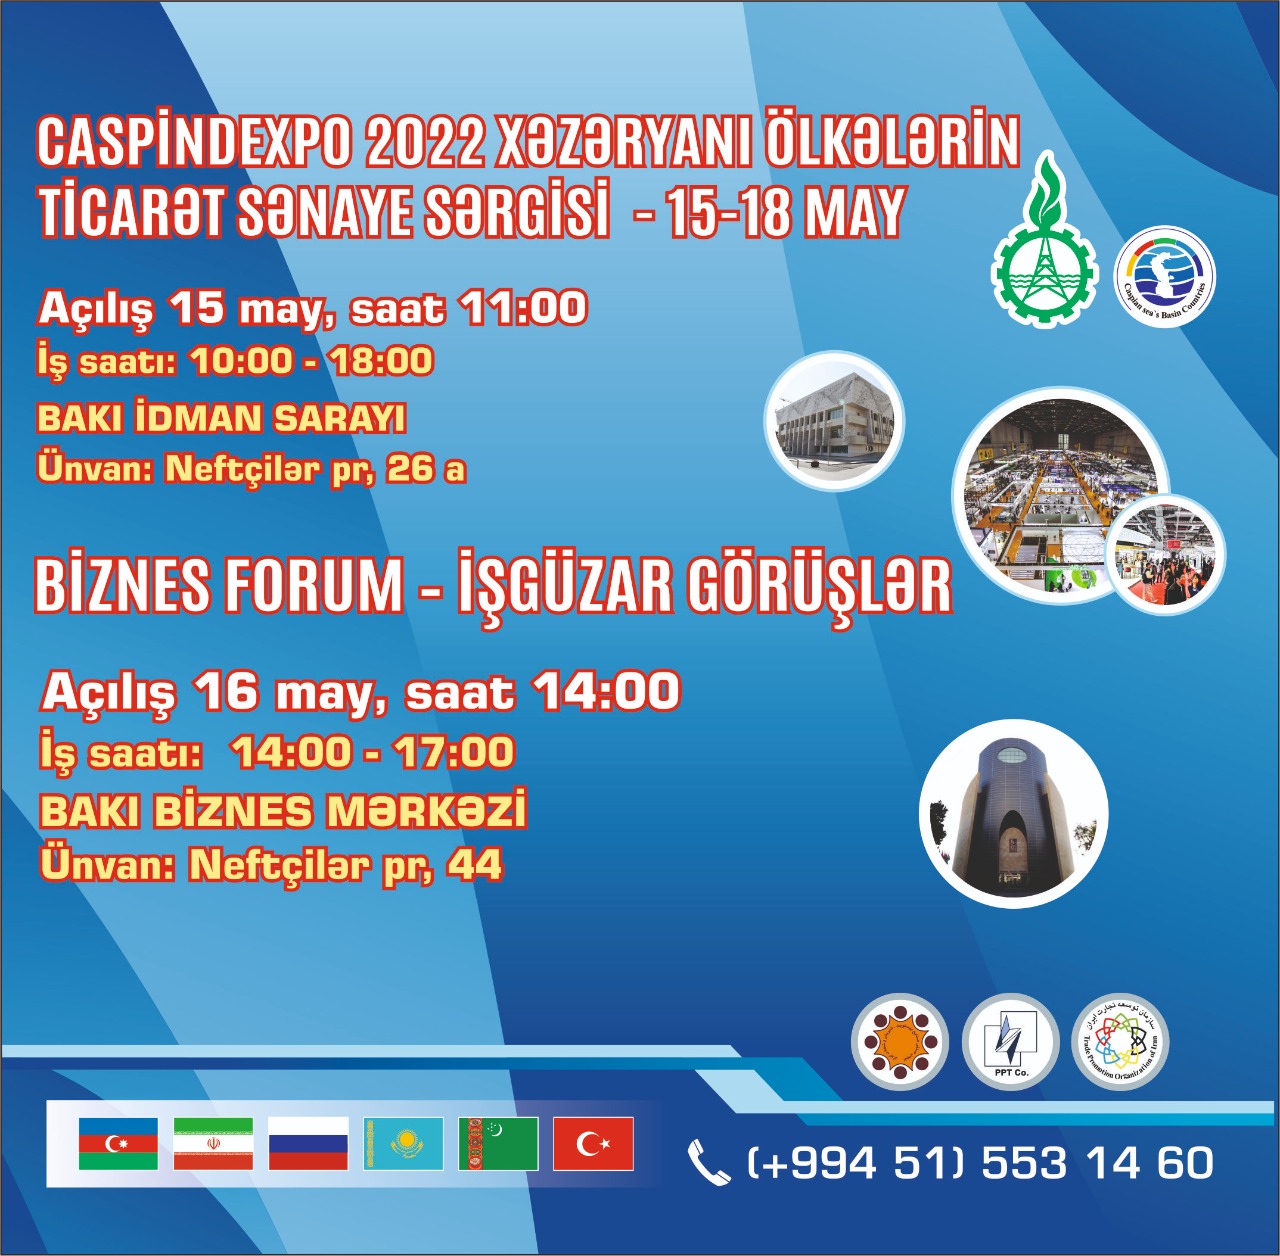 Азербайджанские предприниматели приглашены на выставку и бизнес-форум CASPINDEXPO 2022